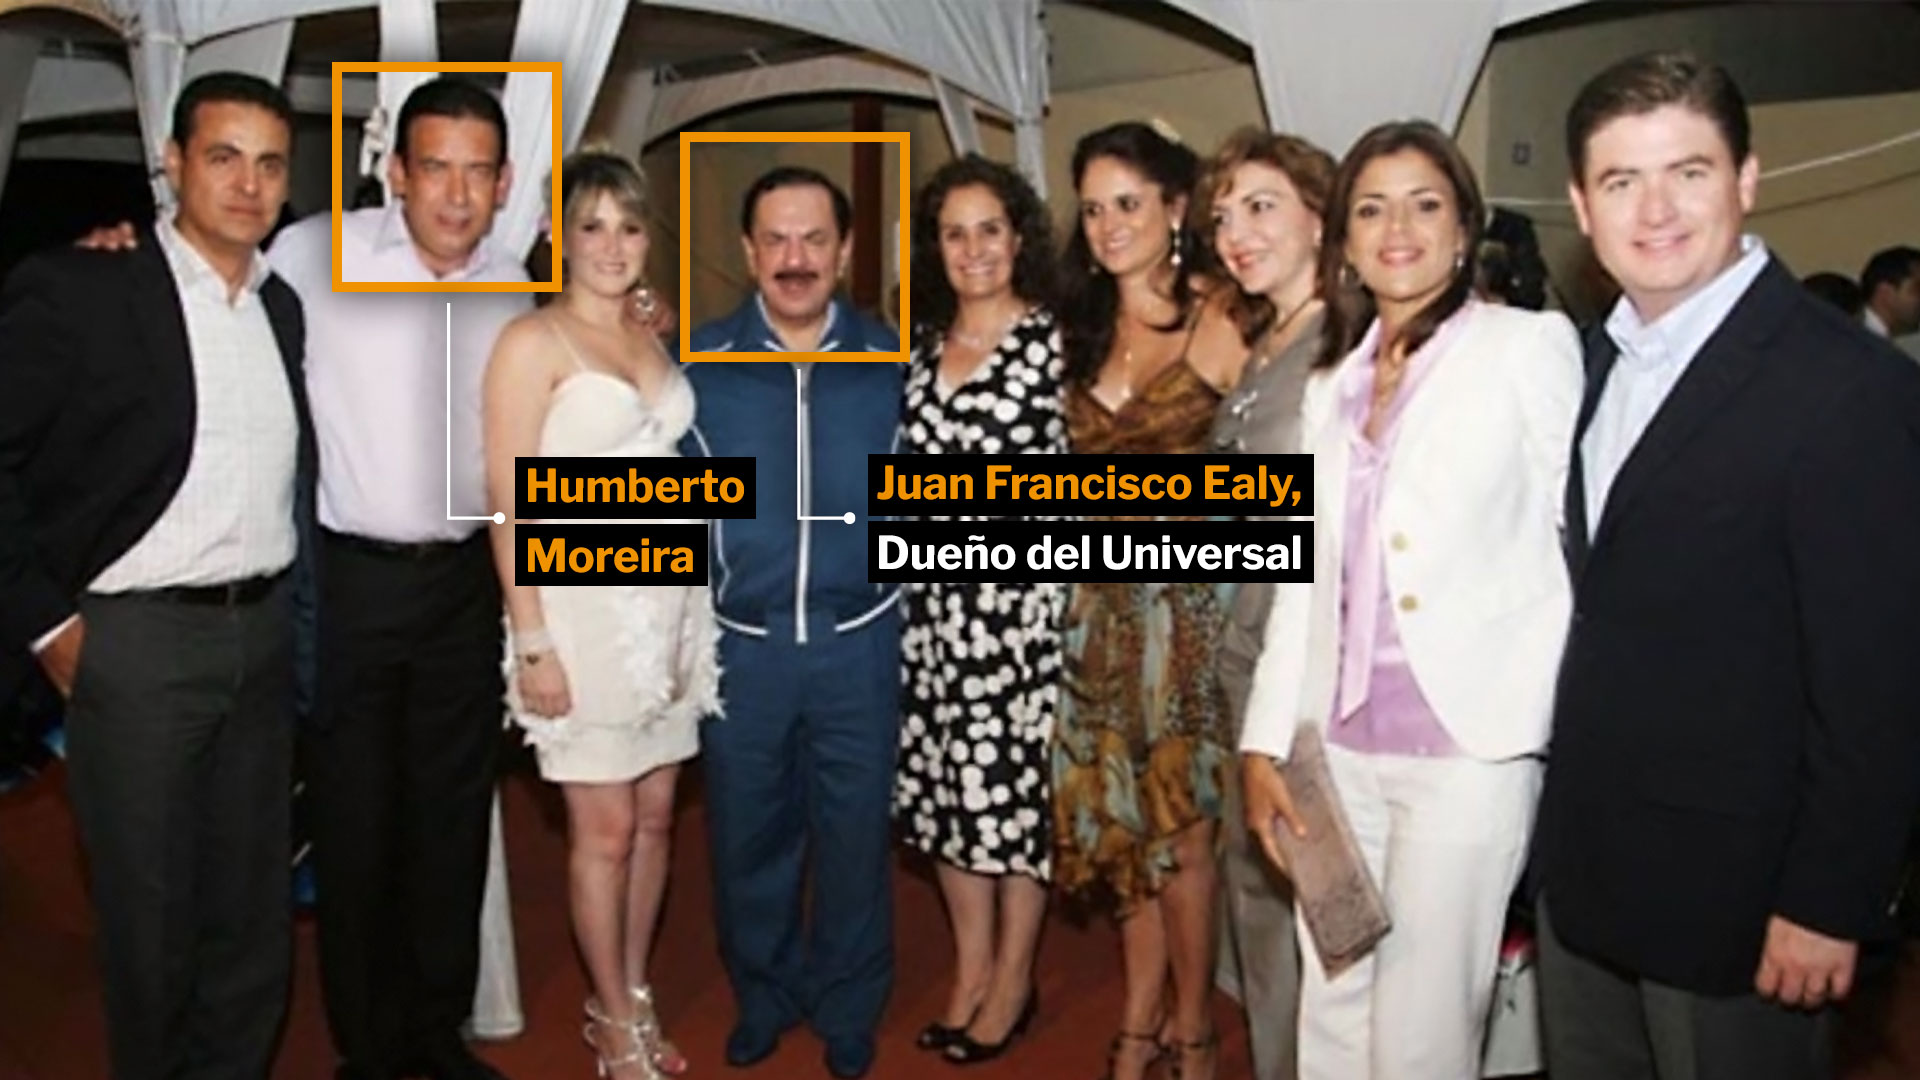 Humberto Moreira y el dueño de El Universal son presuntamente compadres (Twitter / @JesusGar)